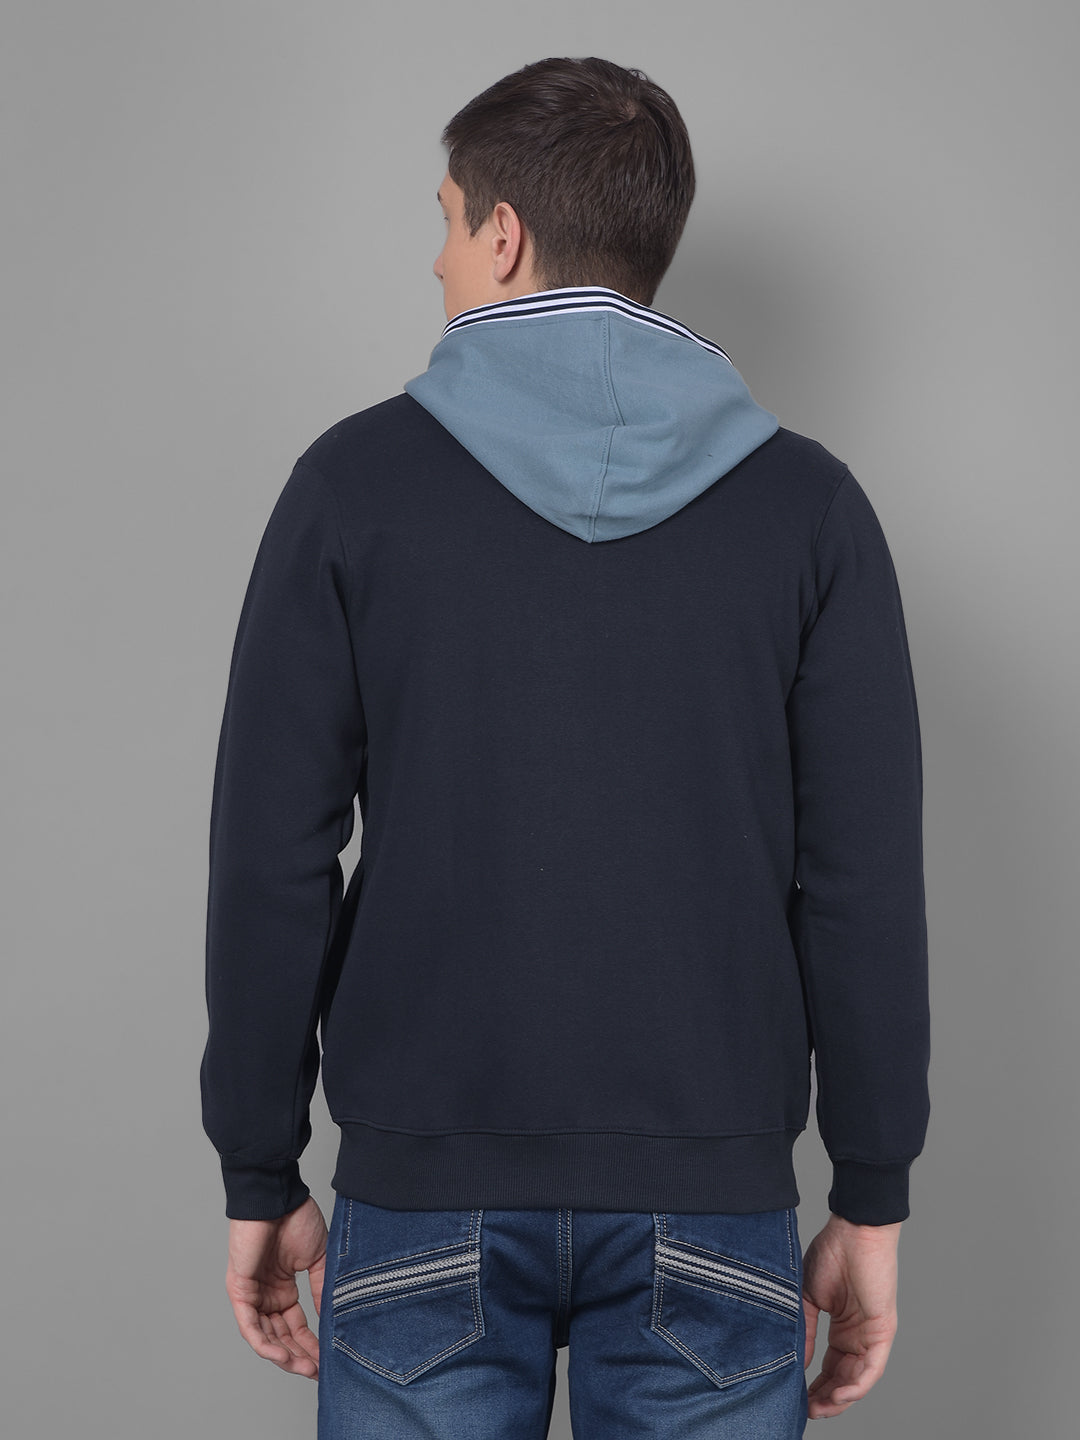 cobb aqua navy printed zip-up hoodie